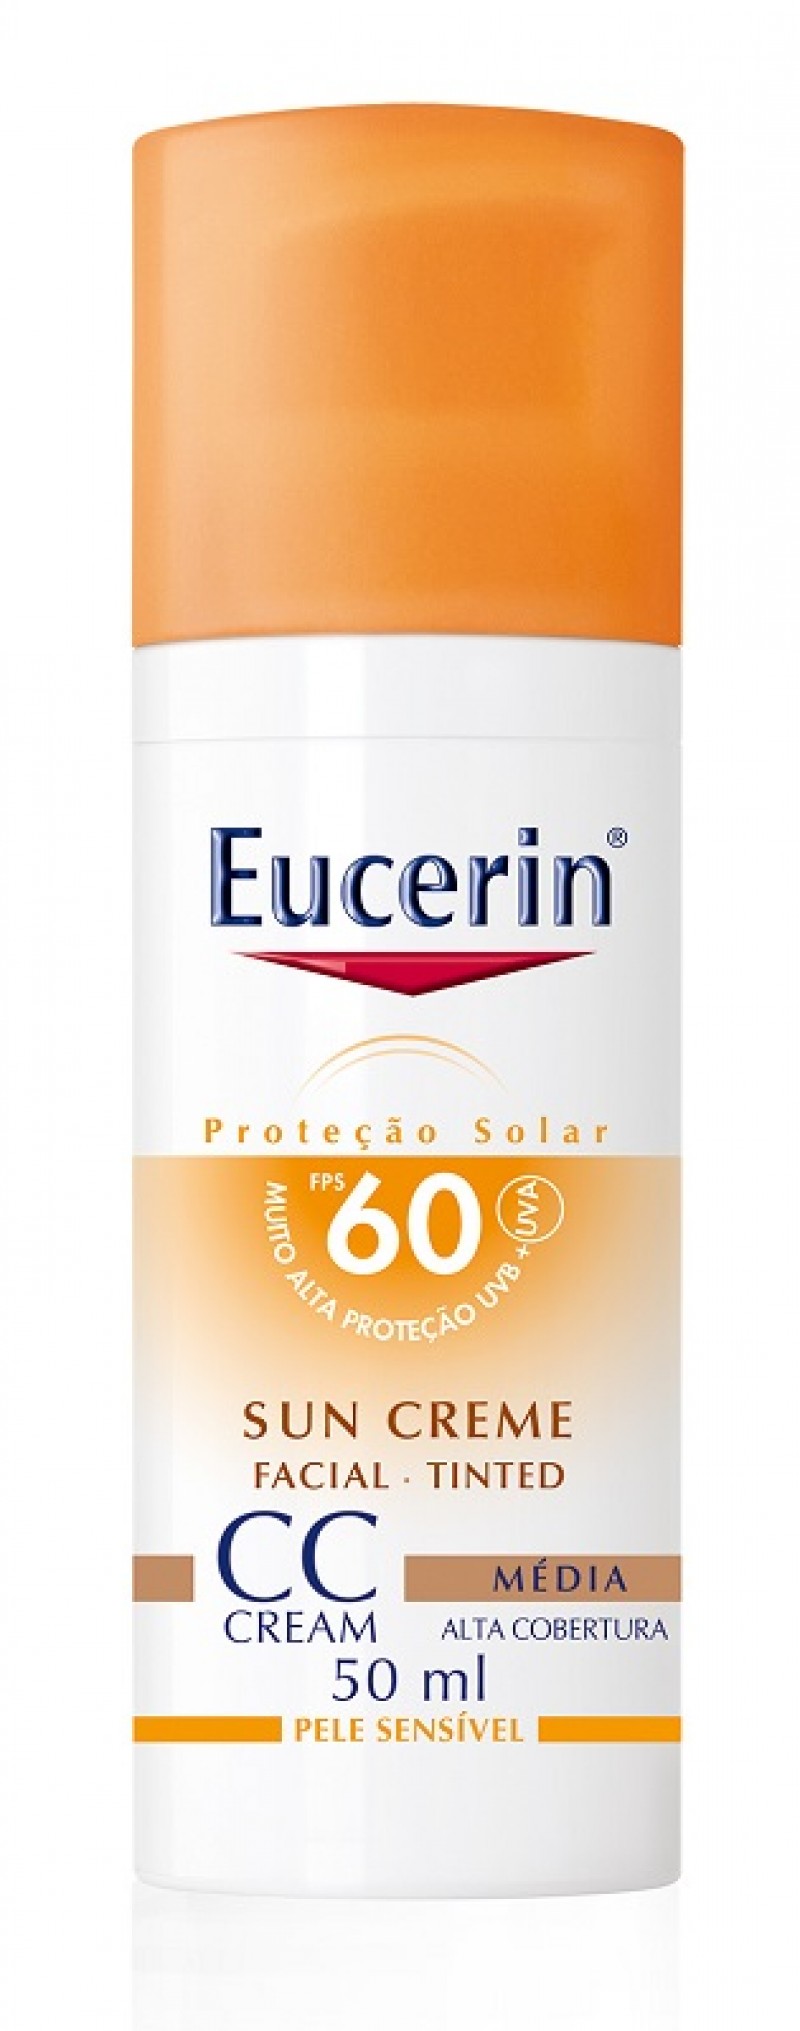 Eucerin lança primeiro protetor solar facial CC Cream 